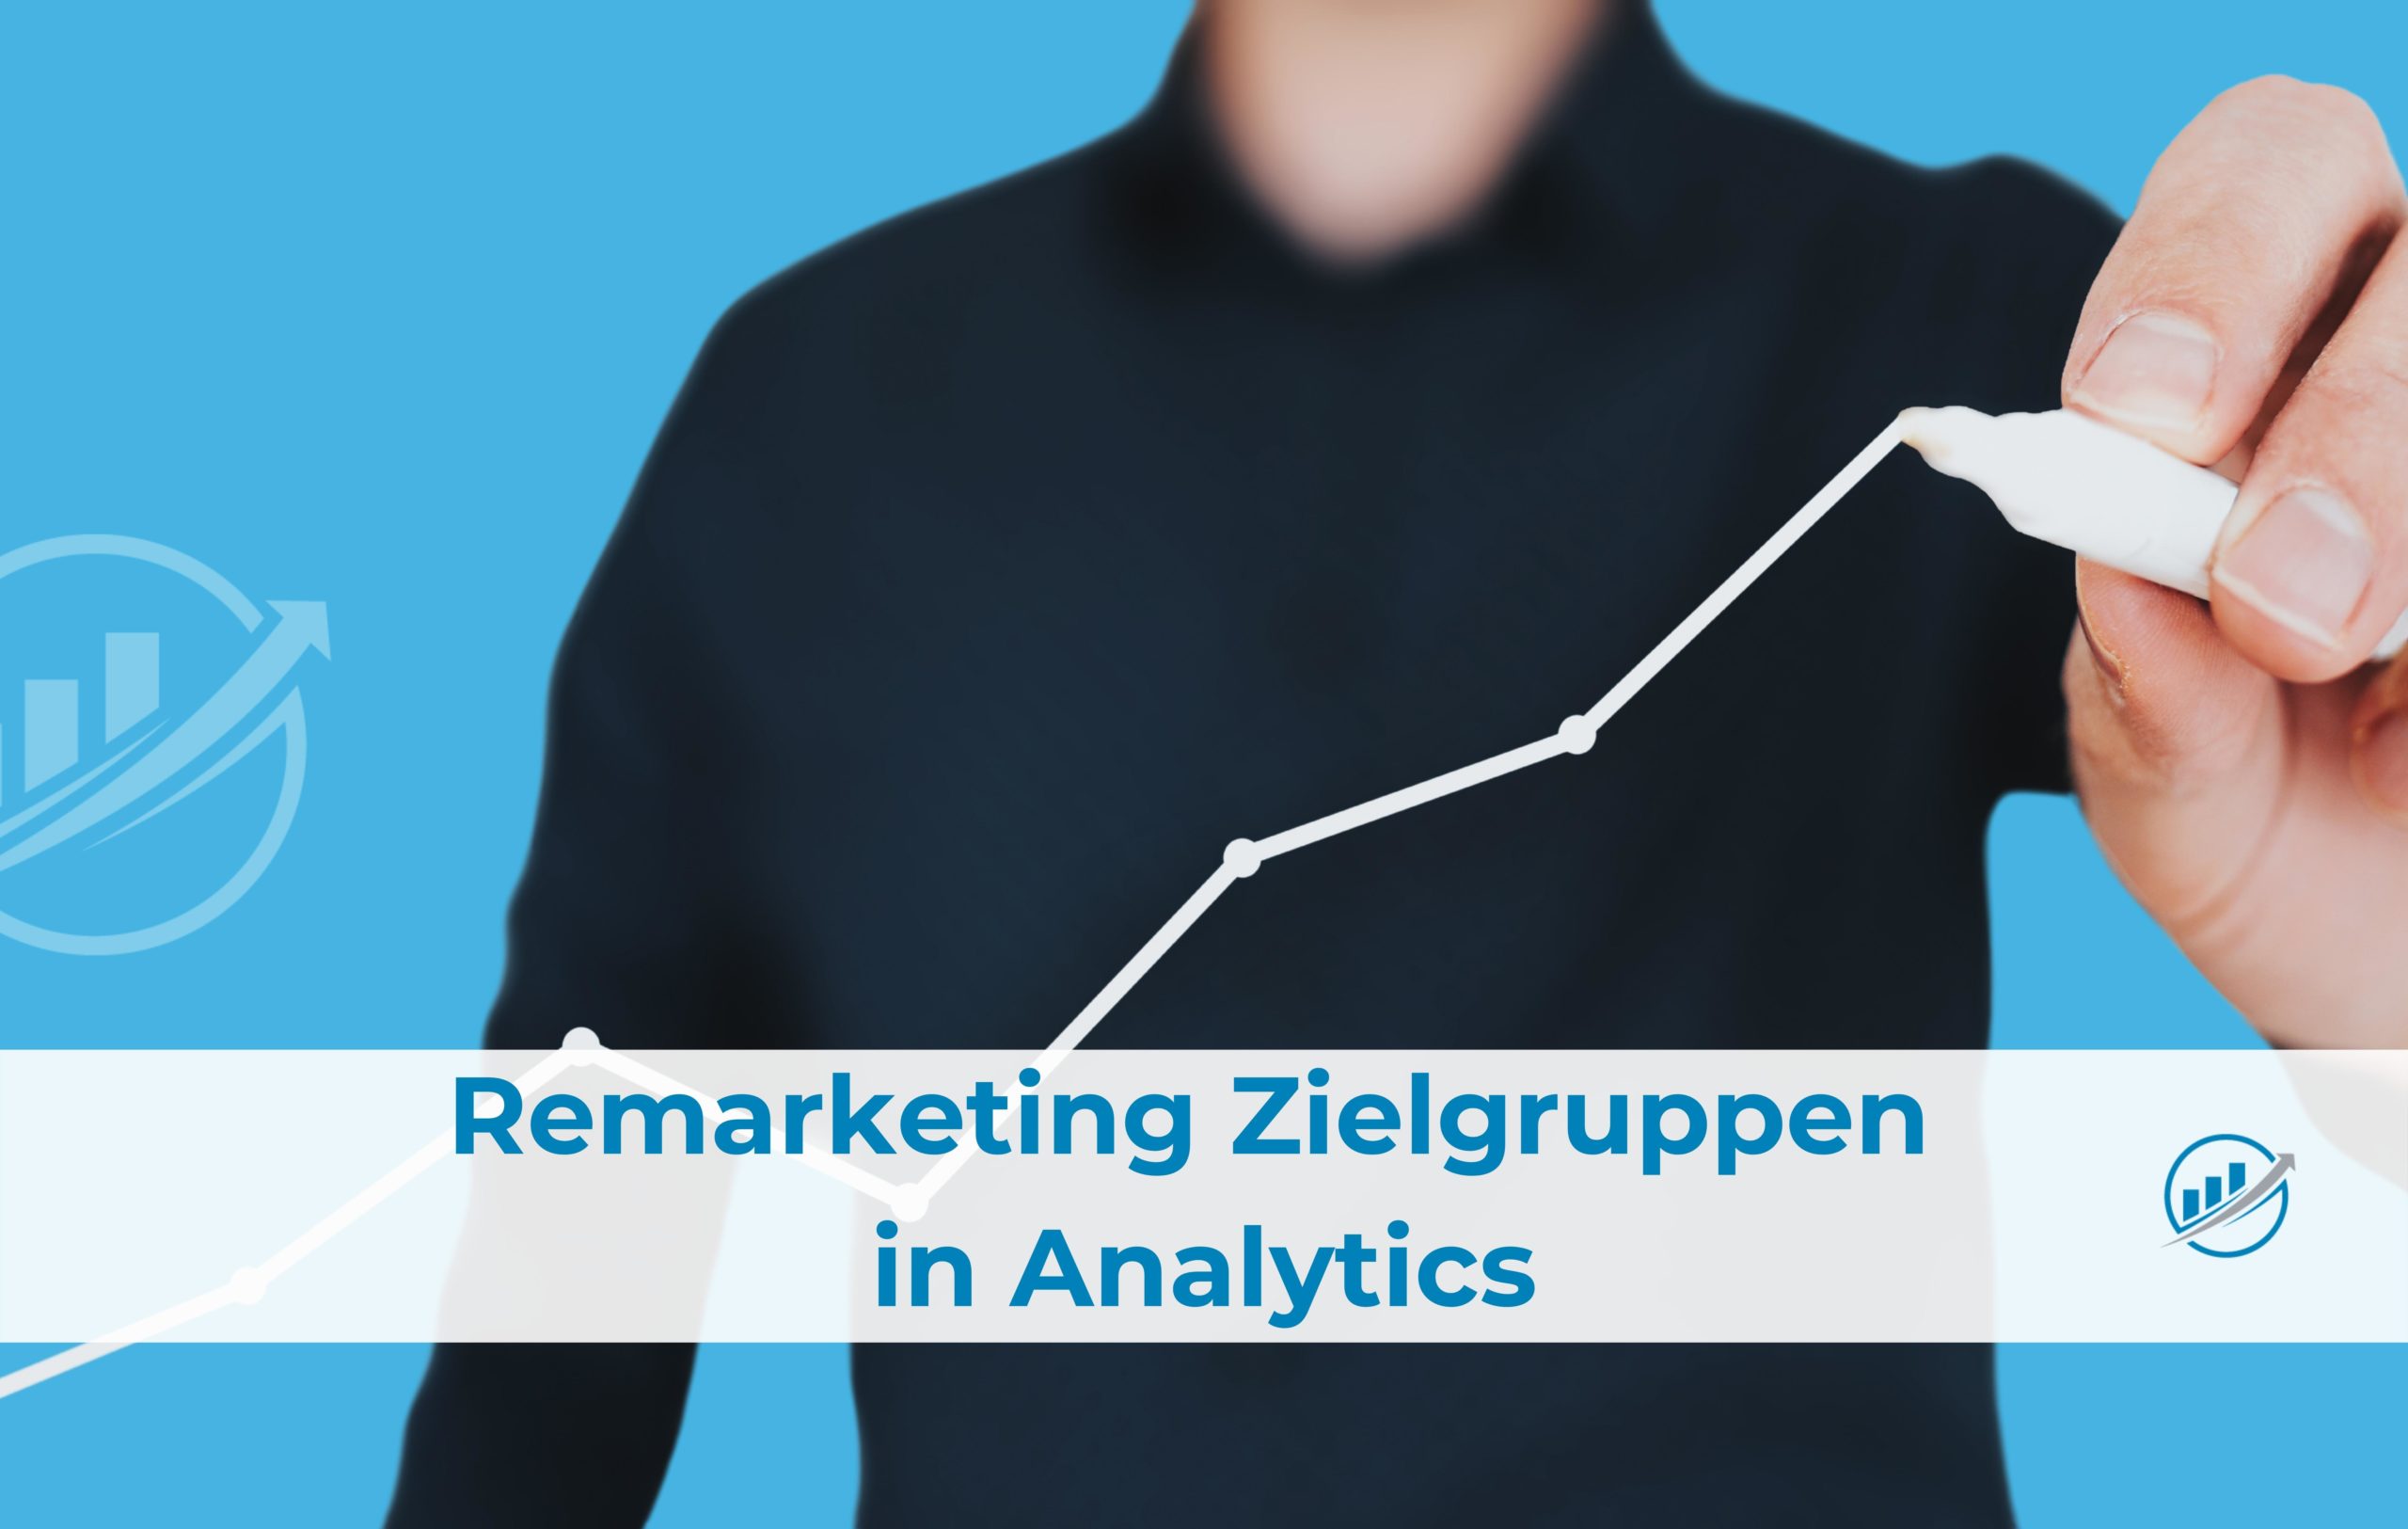 Remarketing Zielgruppen in Analytics